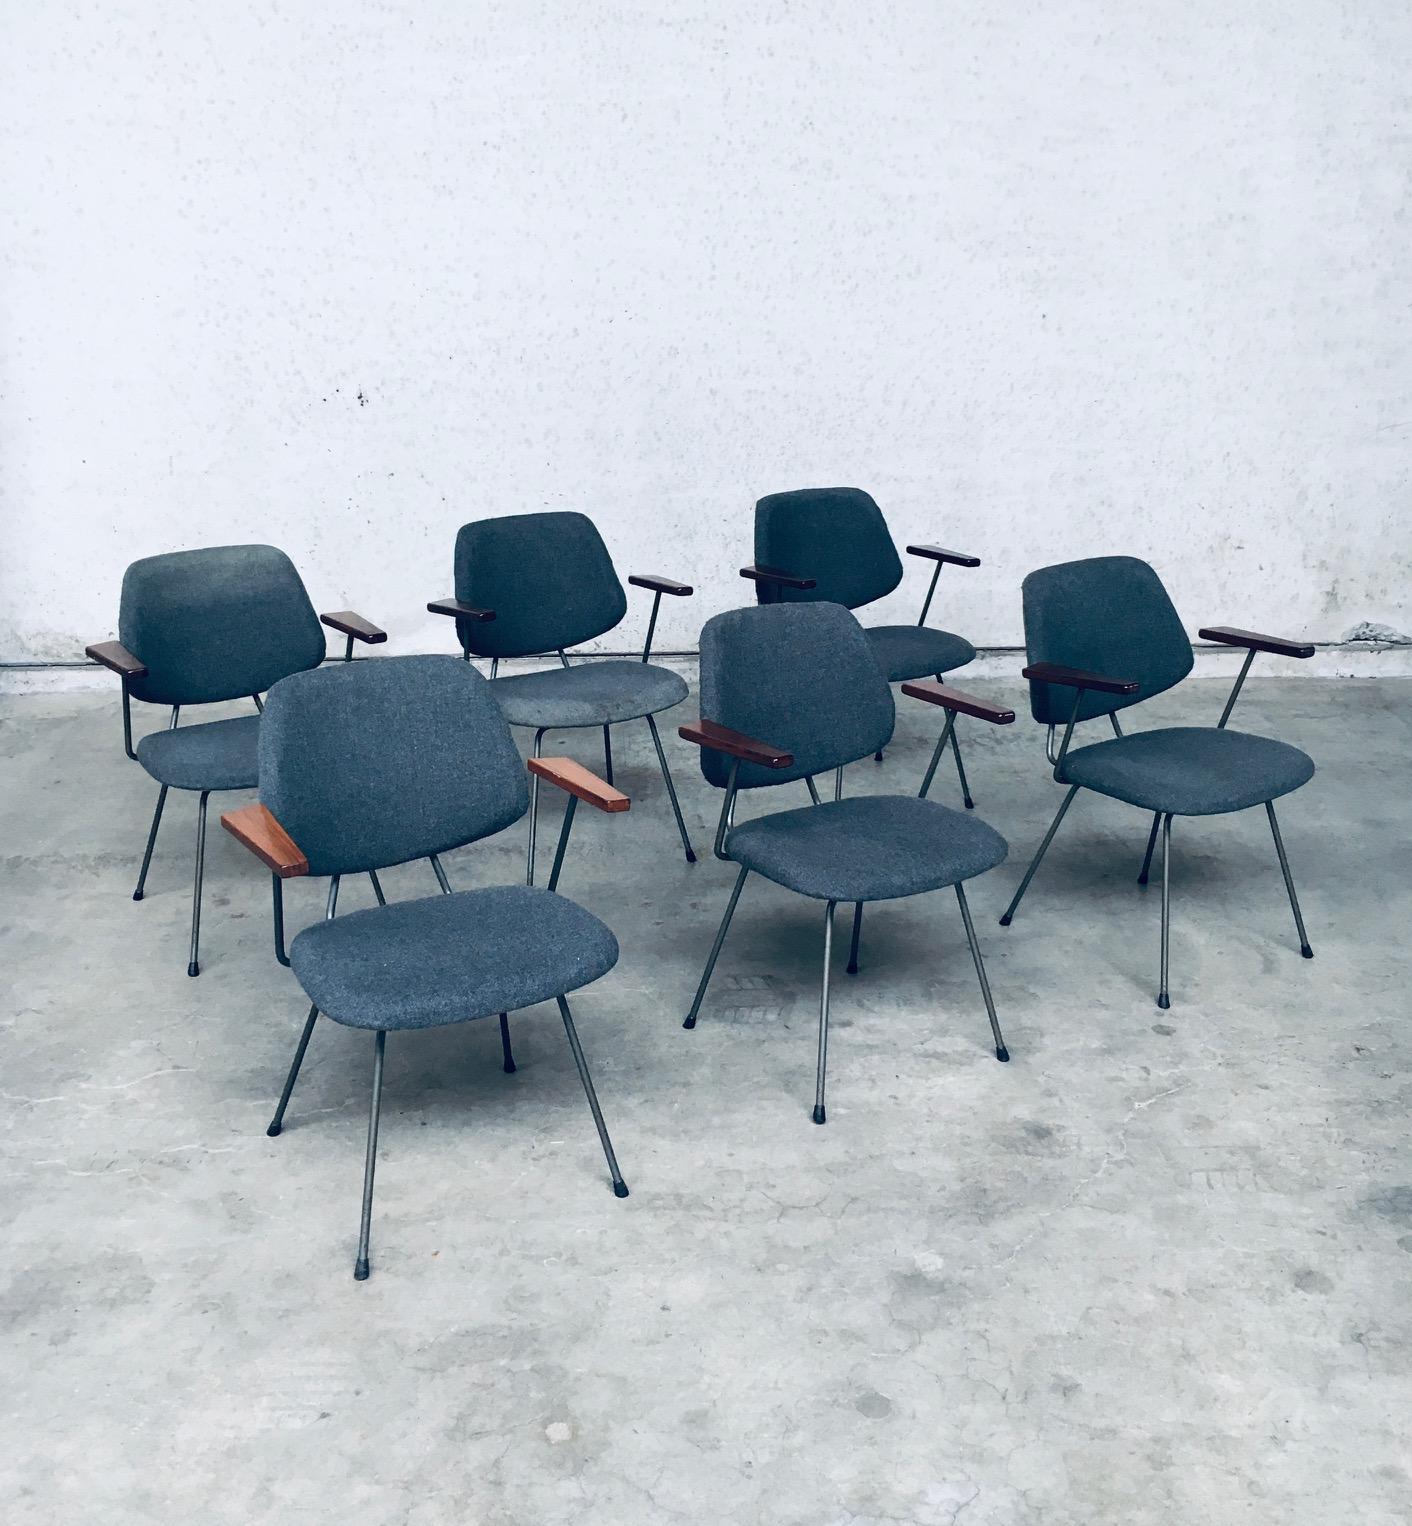 Vintage Midcentury Modern Dutch Design Office Arm Chair set of 6 by Wim Rietveld for Kembo. Fabriqué aux Pays-Bas, période des années 1950. Chaises de salle de conférence au design industriel en tissu gris bleuté sur une structure en acier tubulaire